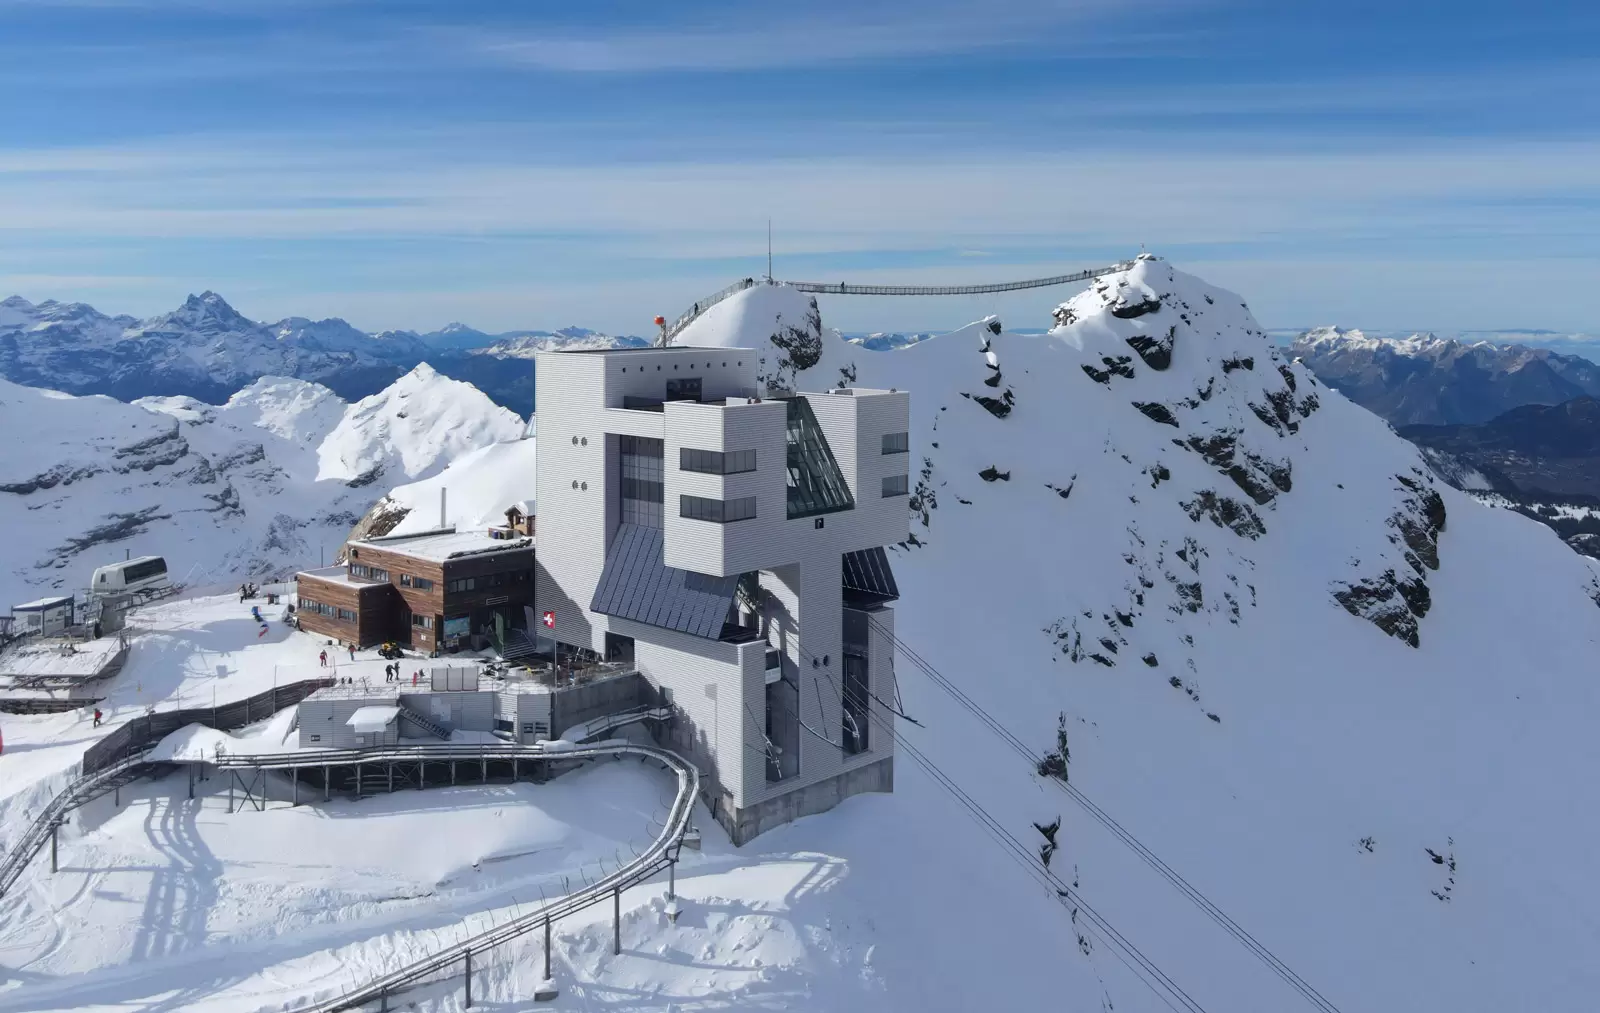 Progetto nuovo ristorante Glacier3000 Mario Botta Architetti